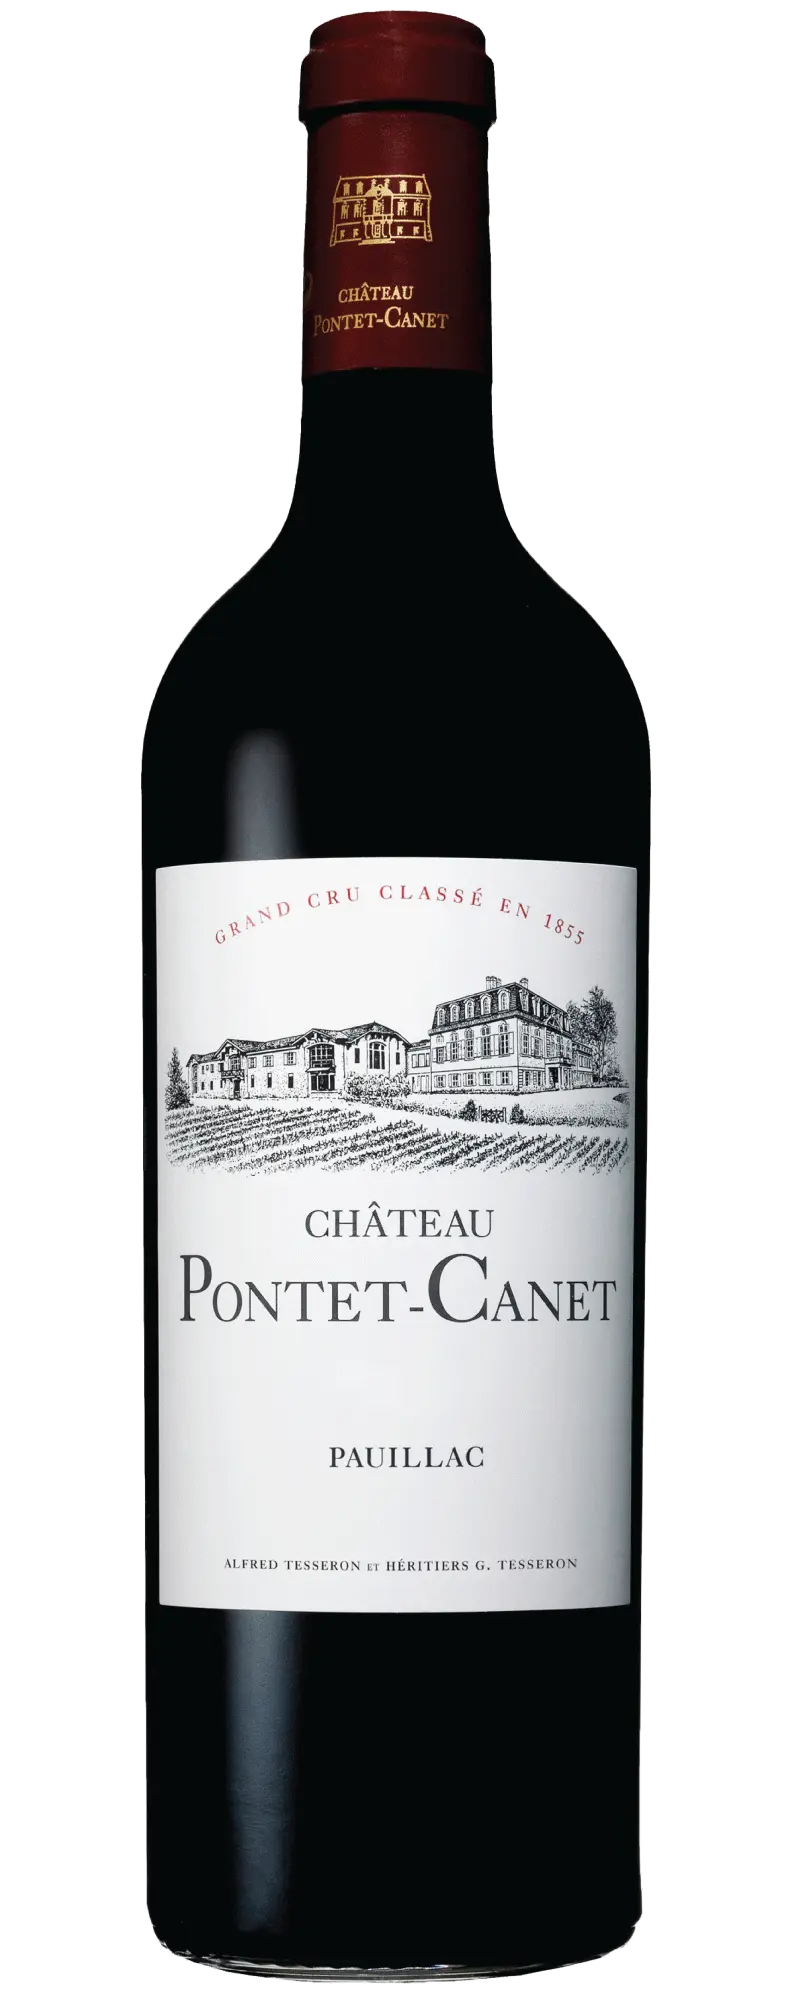 Chateau Pontet Canet 2013 (1x75cl) - TwoMoreGlasses.com